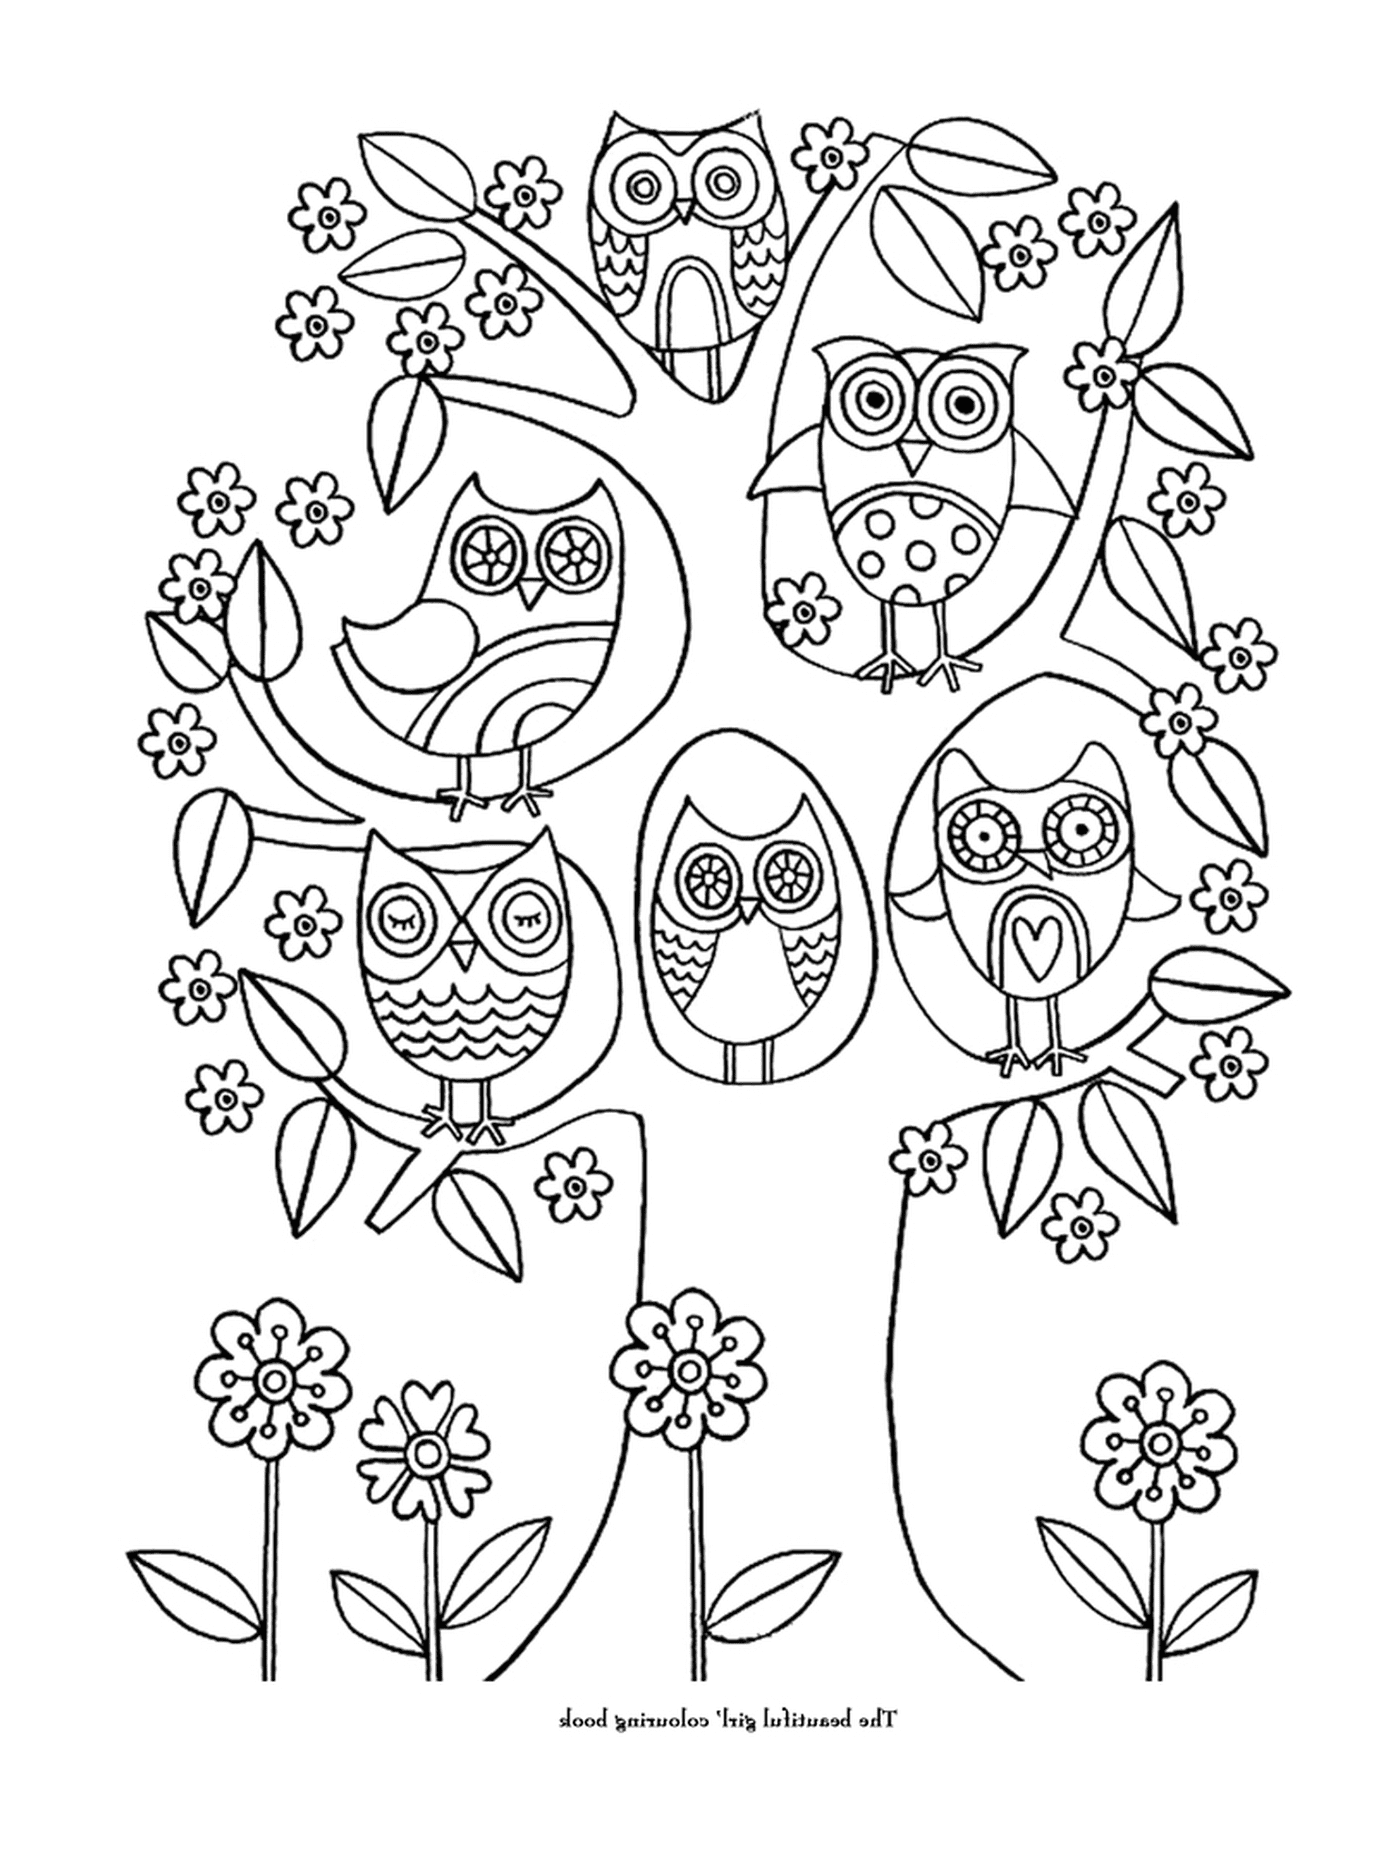  Un grupo de búhos en una rama de árbol 